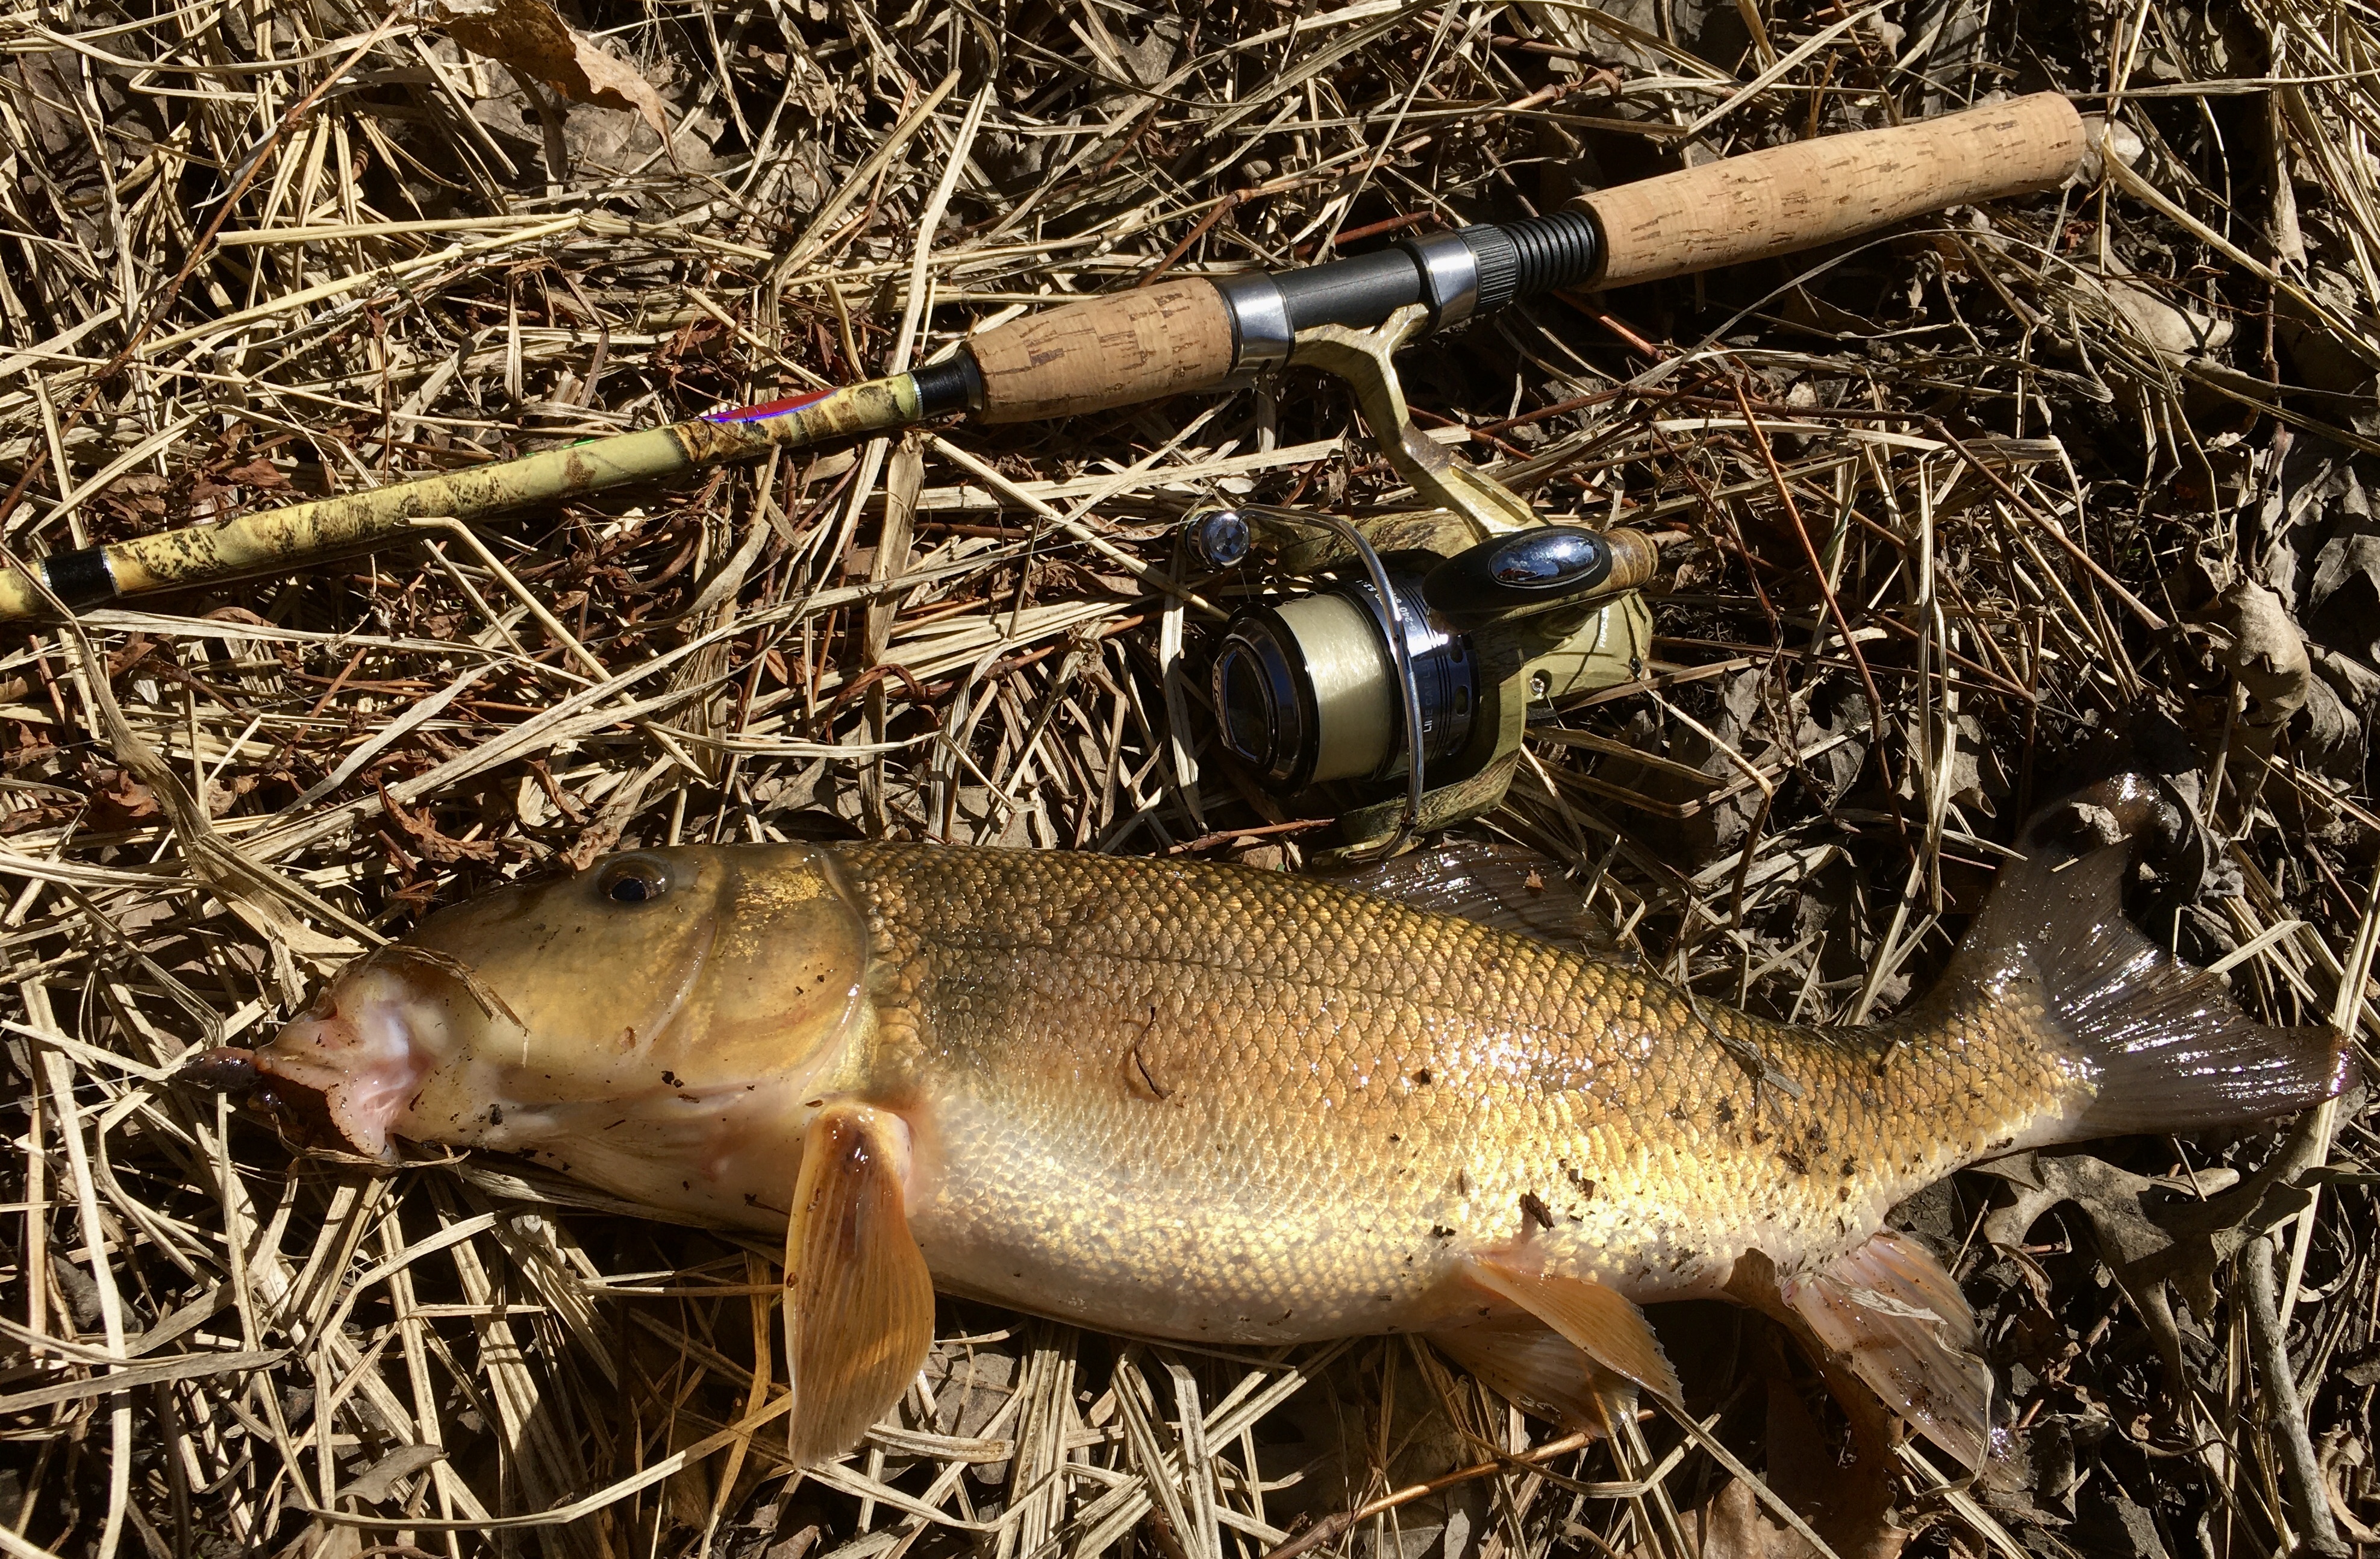 White suckers - Carp/Sturgeon/Real-Gamefish - Outdoor Minnesota